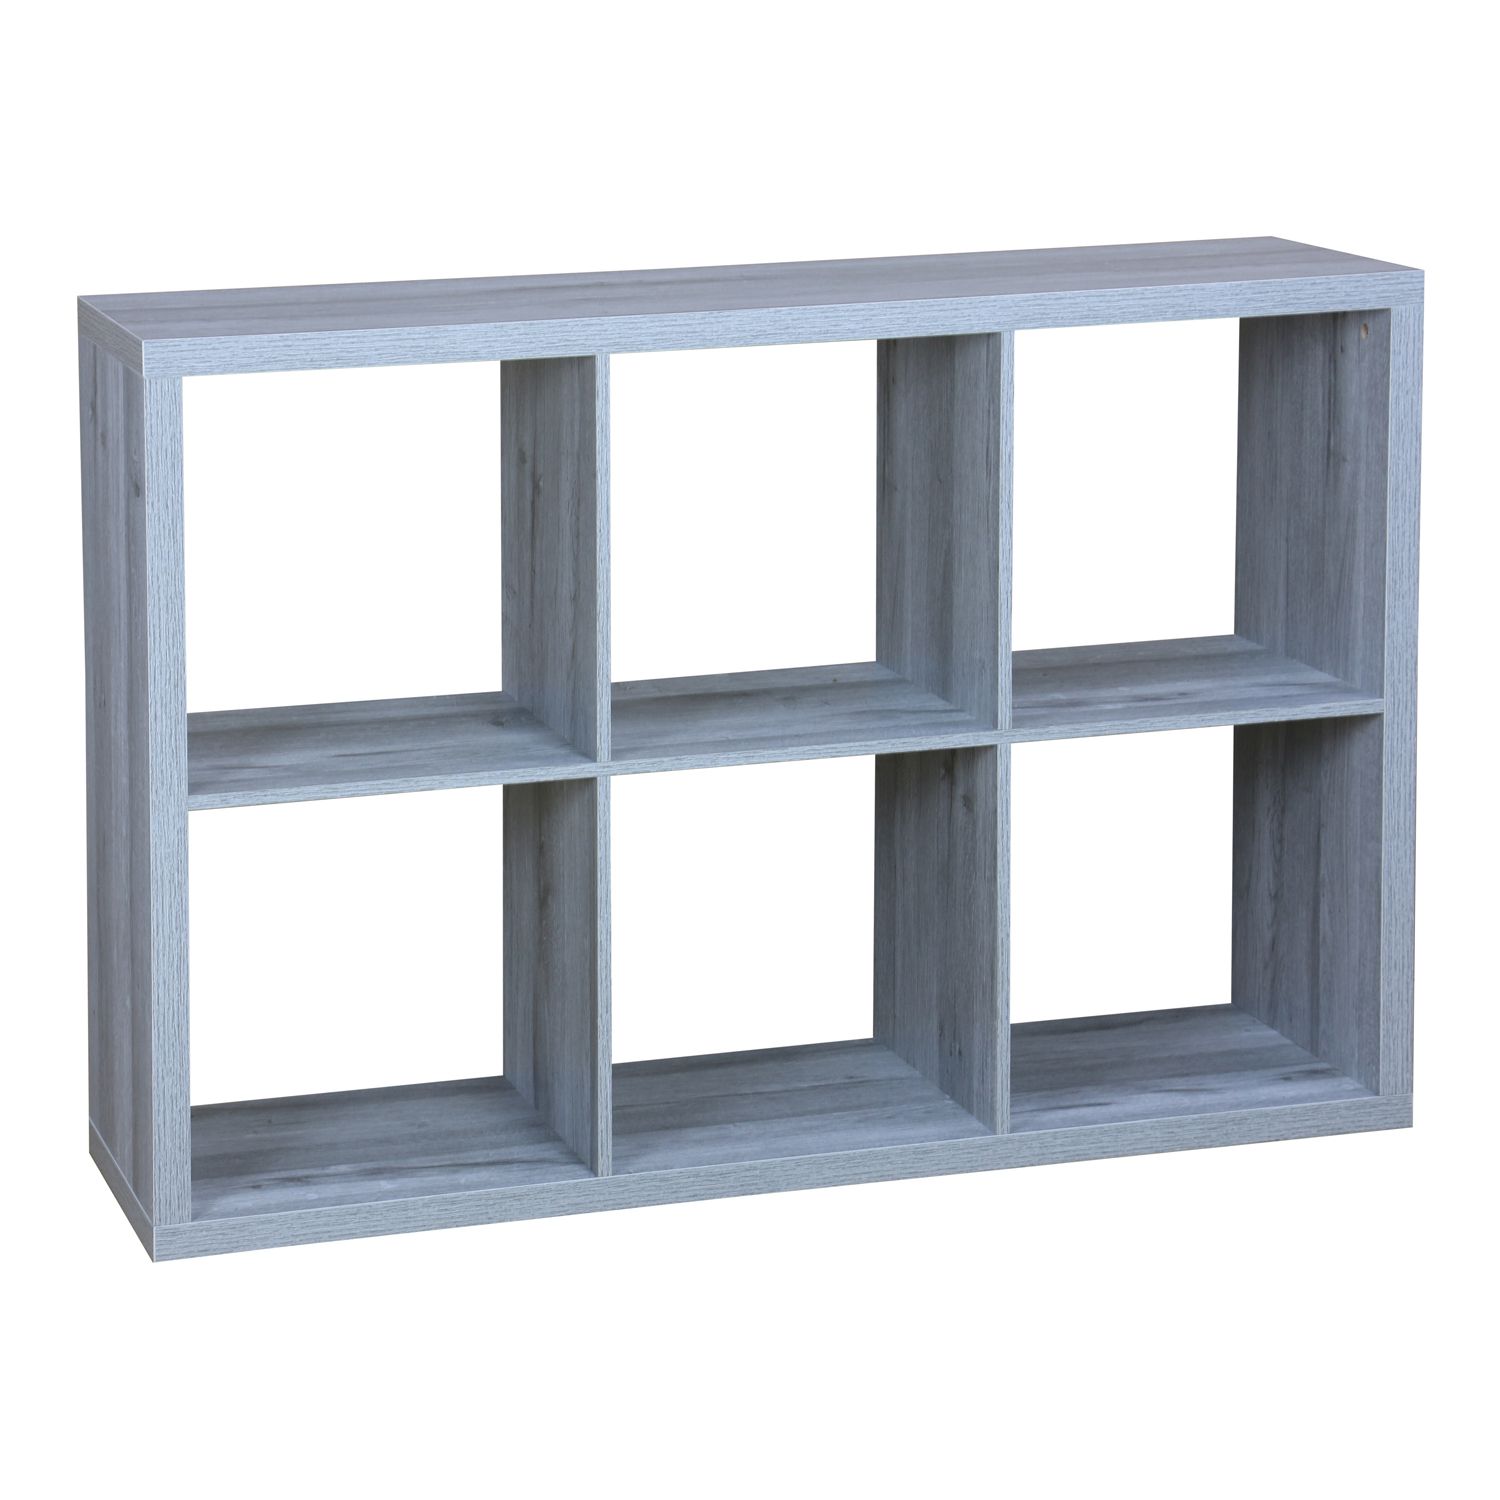 Image for Home Basics 6 Open Cube Organizing Wood Storage Shelf at Kohl's.